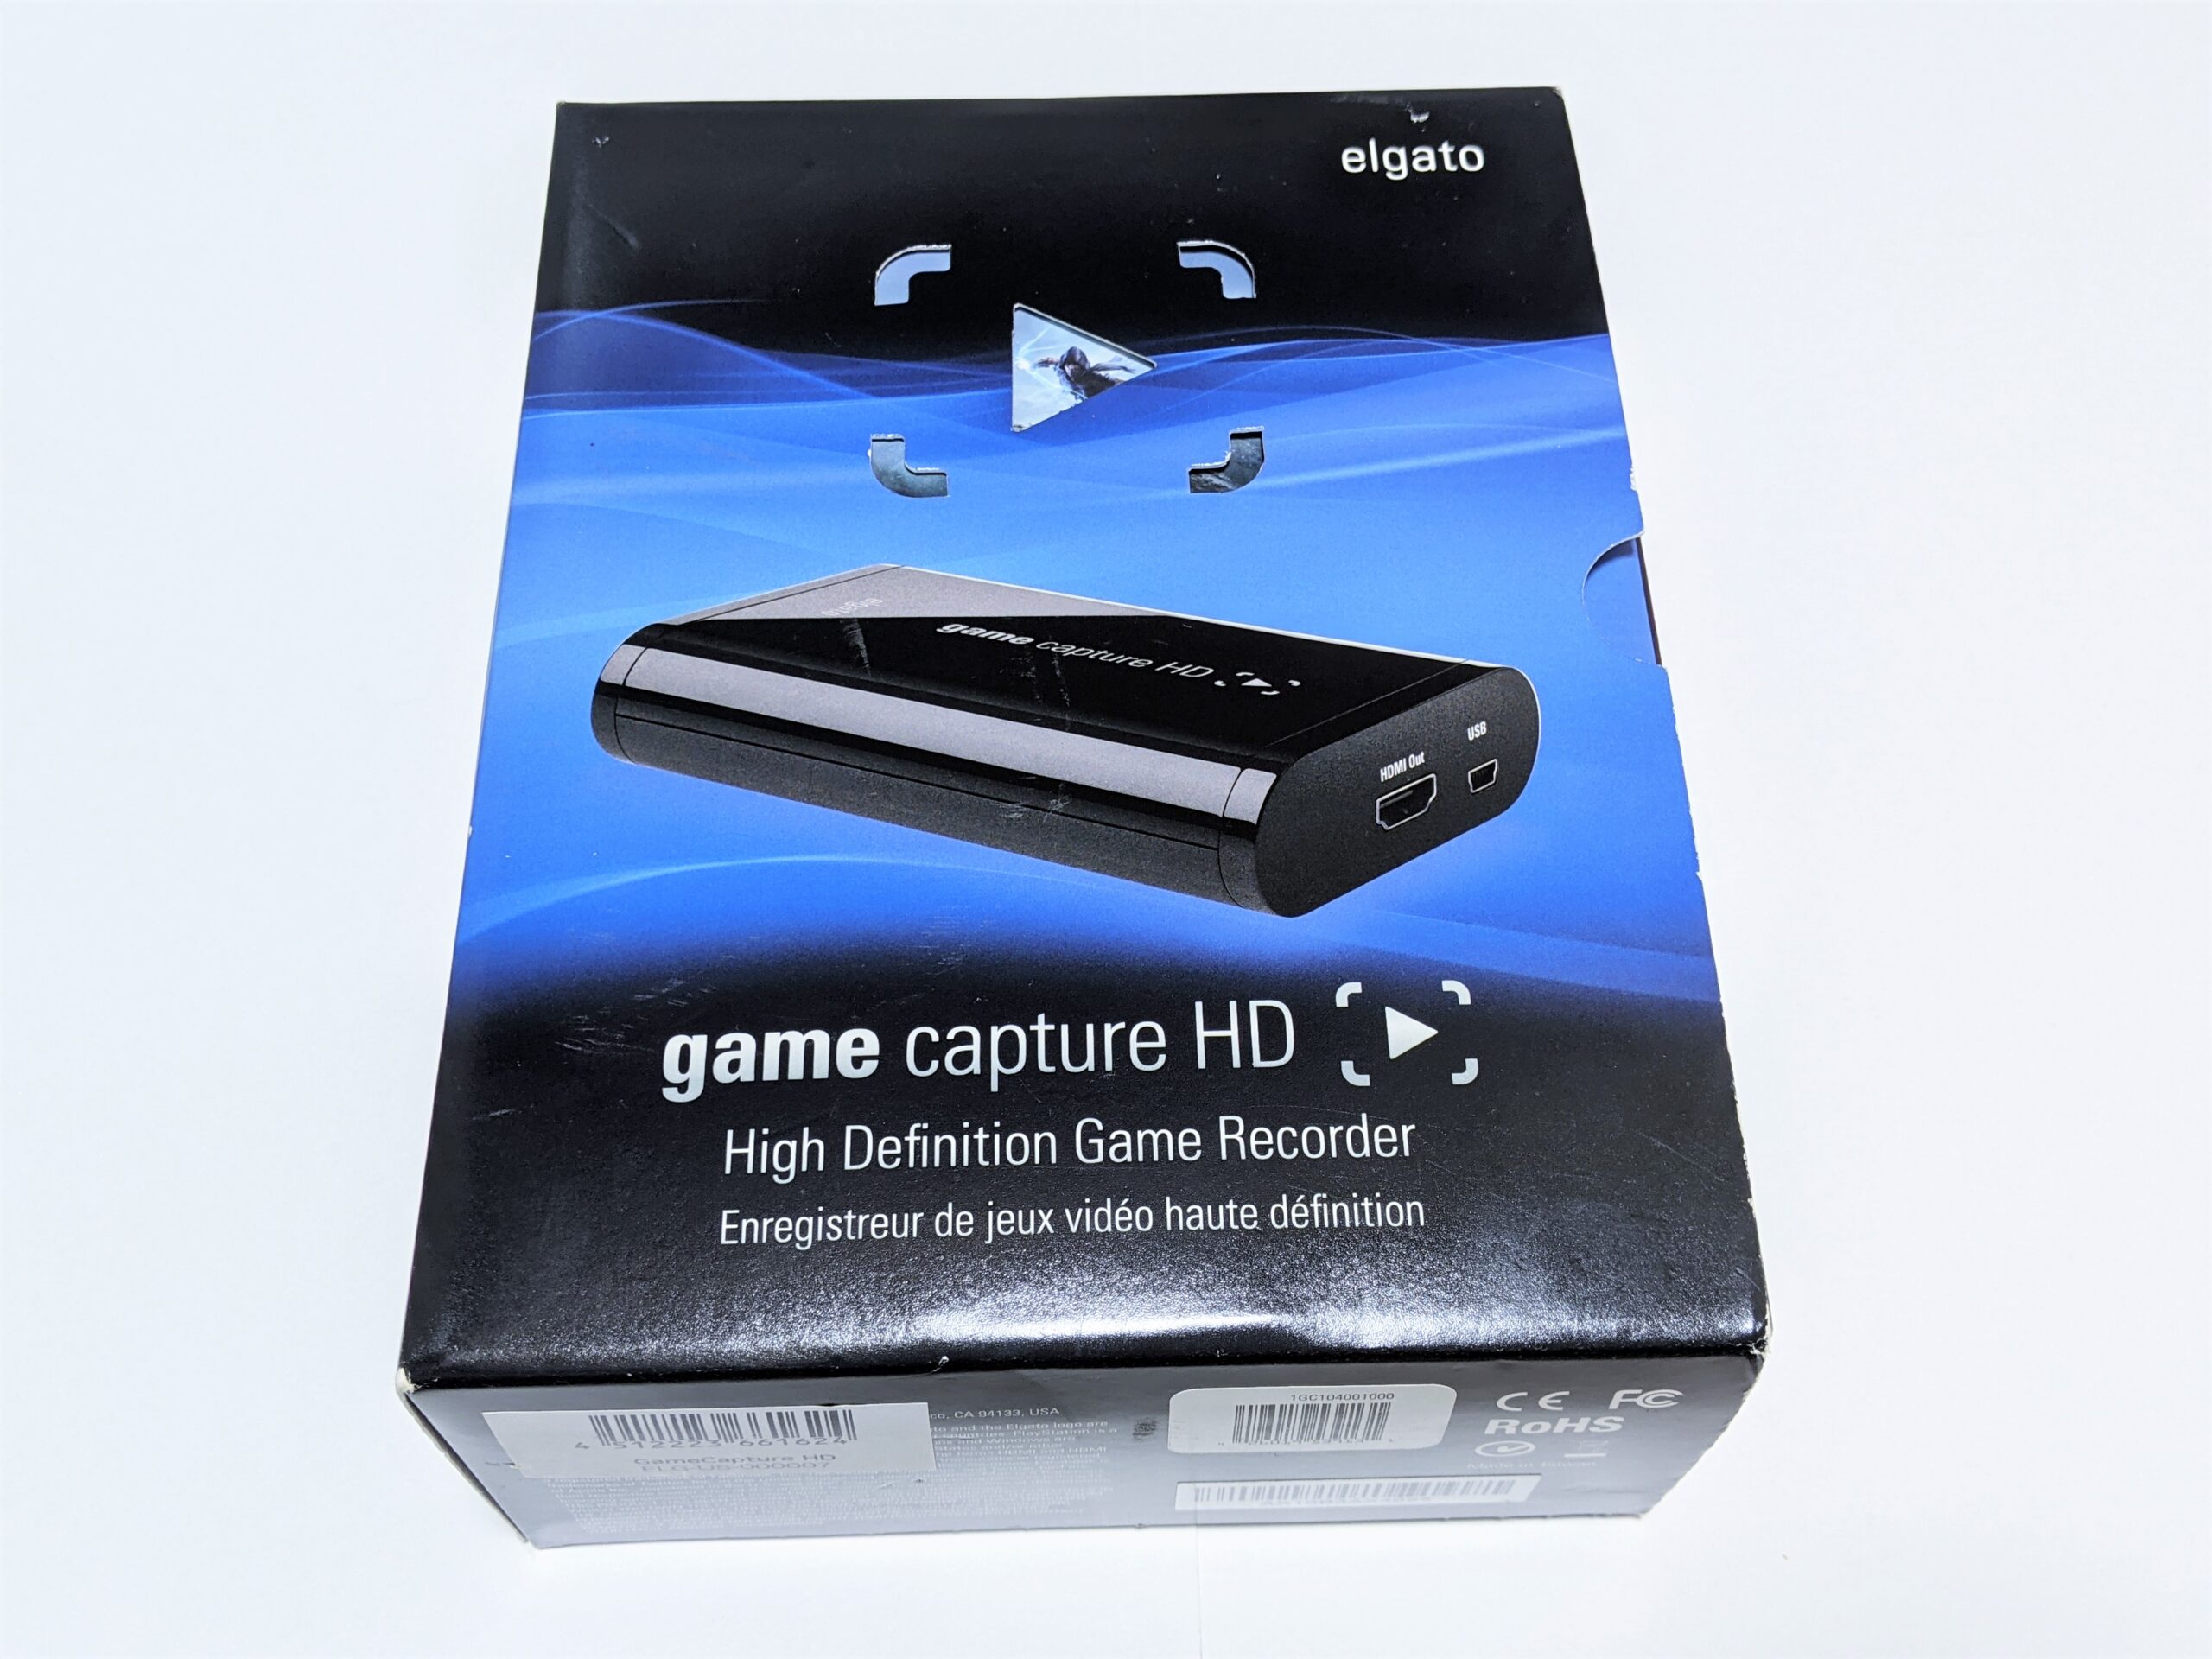 Elgatoのキャプチャーボード「Game Capture HD」とは？製品仕様や録画 